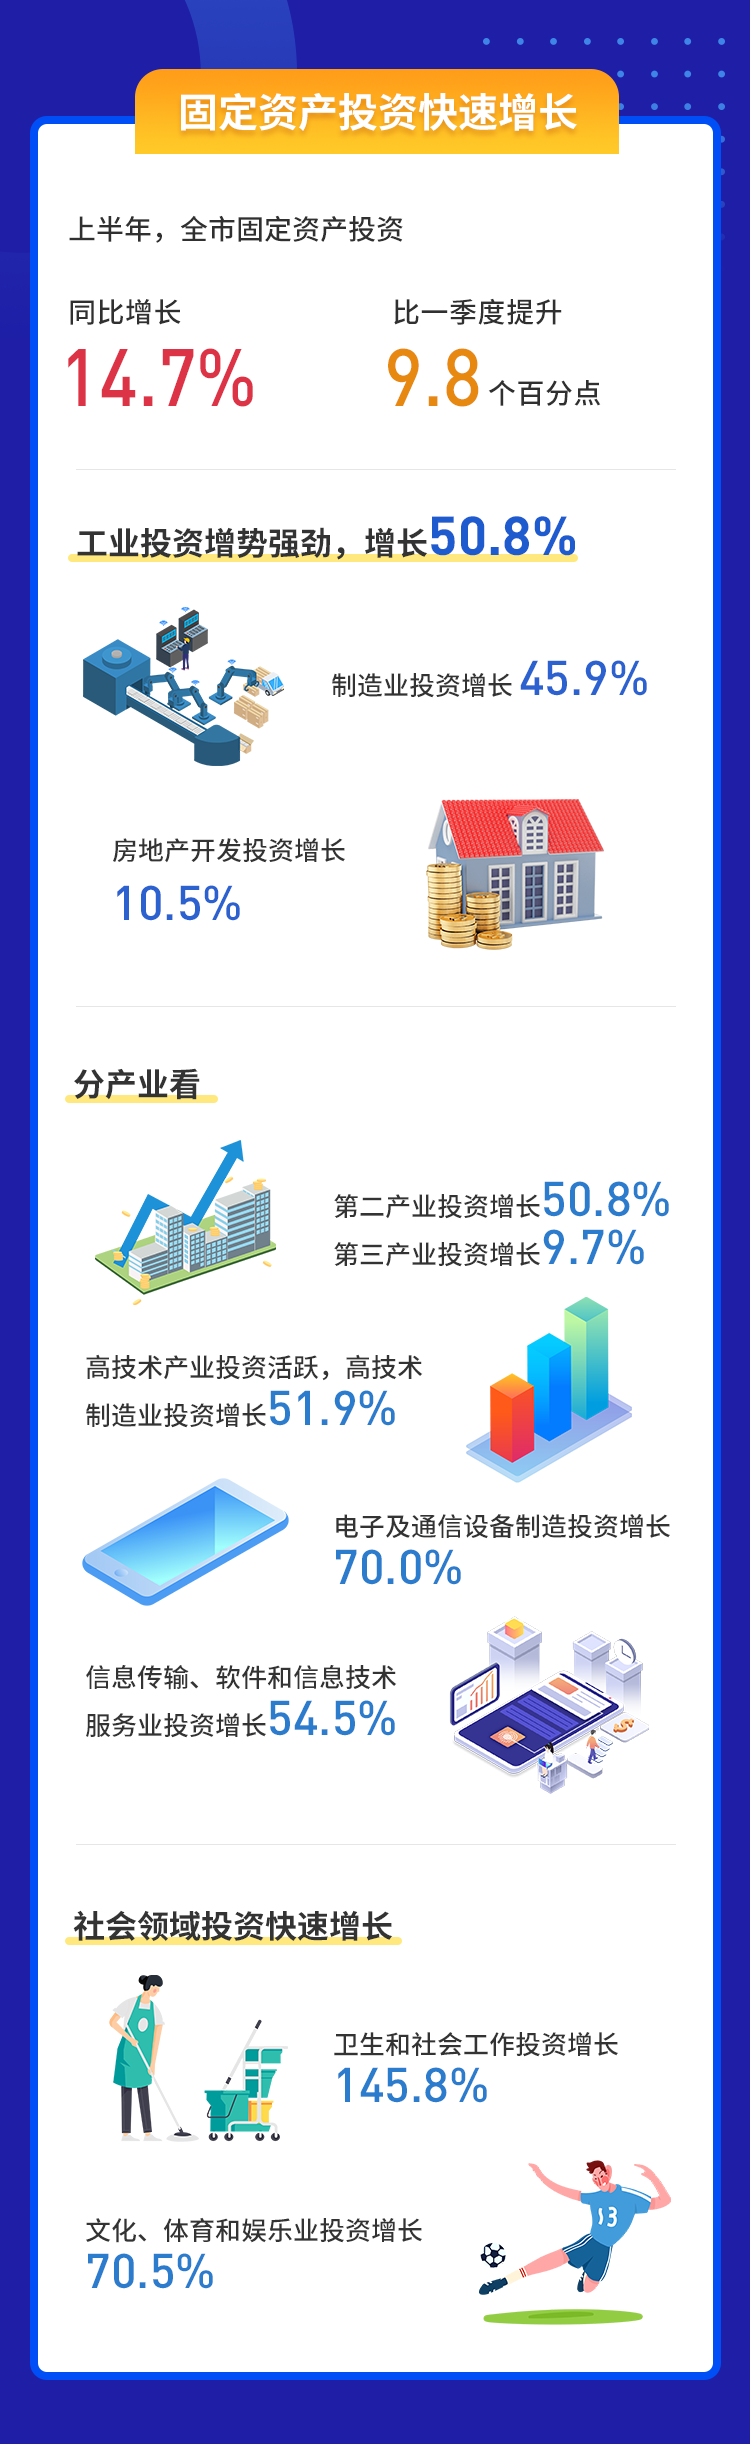 上半年深圳地区生产总值达1.5万亿元